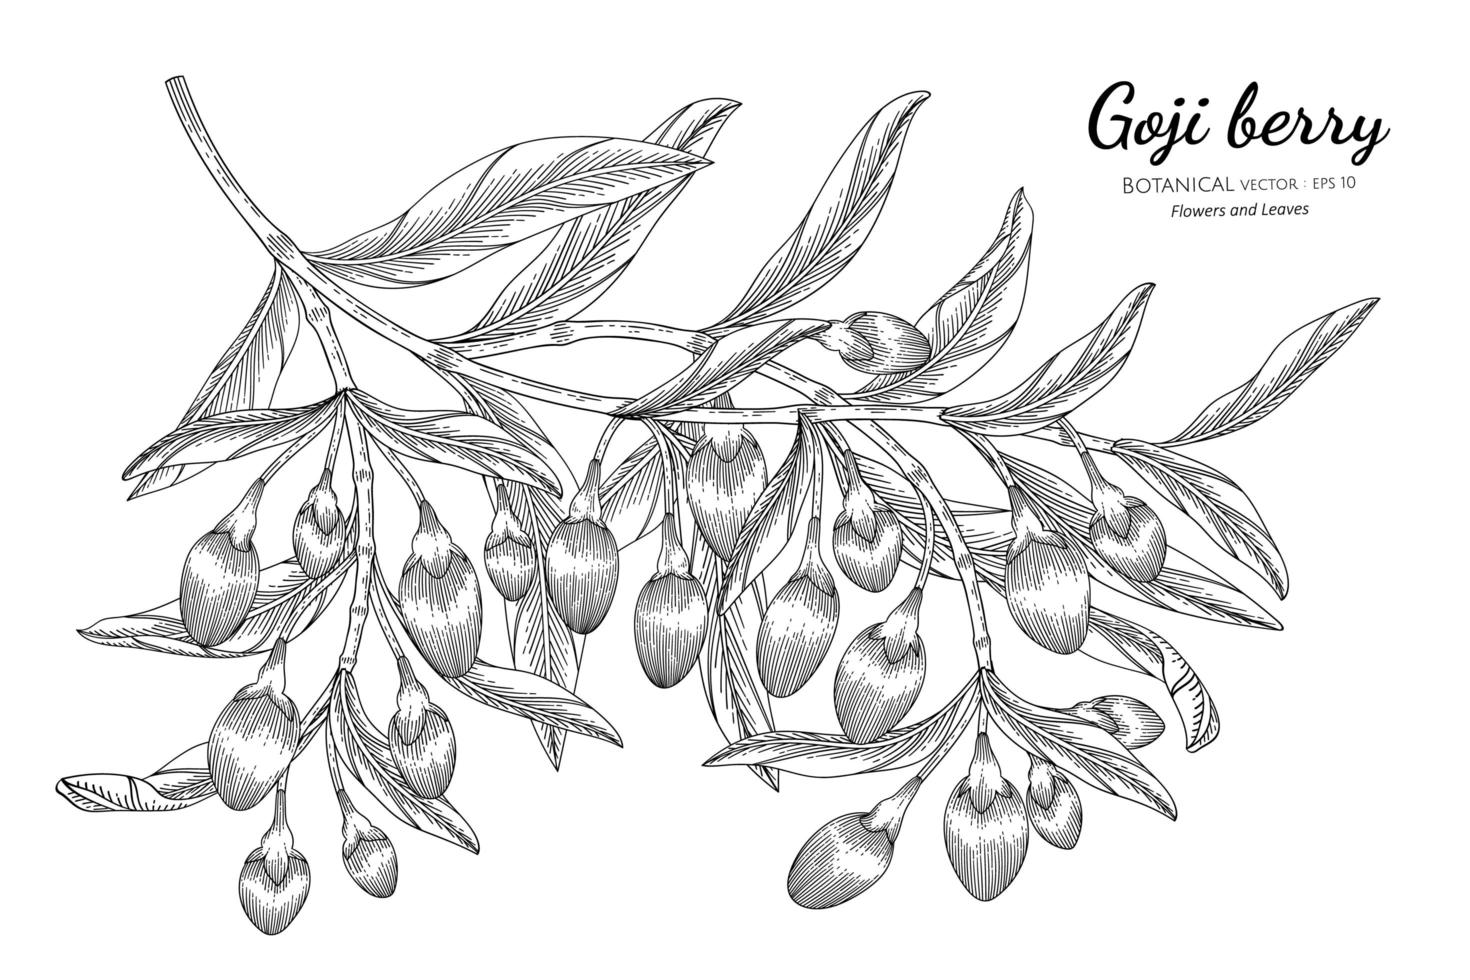 gezeichnete botanische Illustration der Goji-Beerenfruchthand mit Strichzeichnungen auf weißem Hintergrund vektor